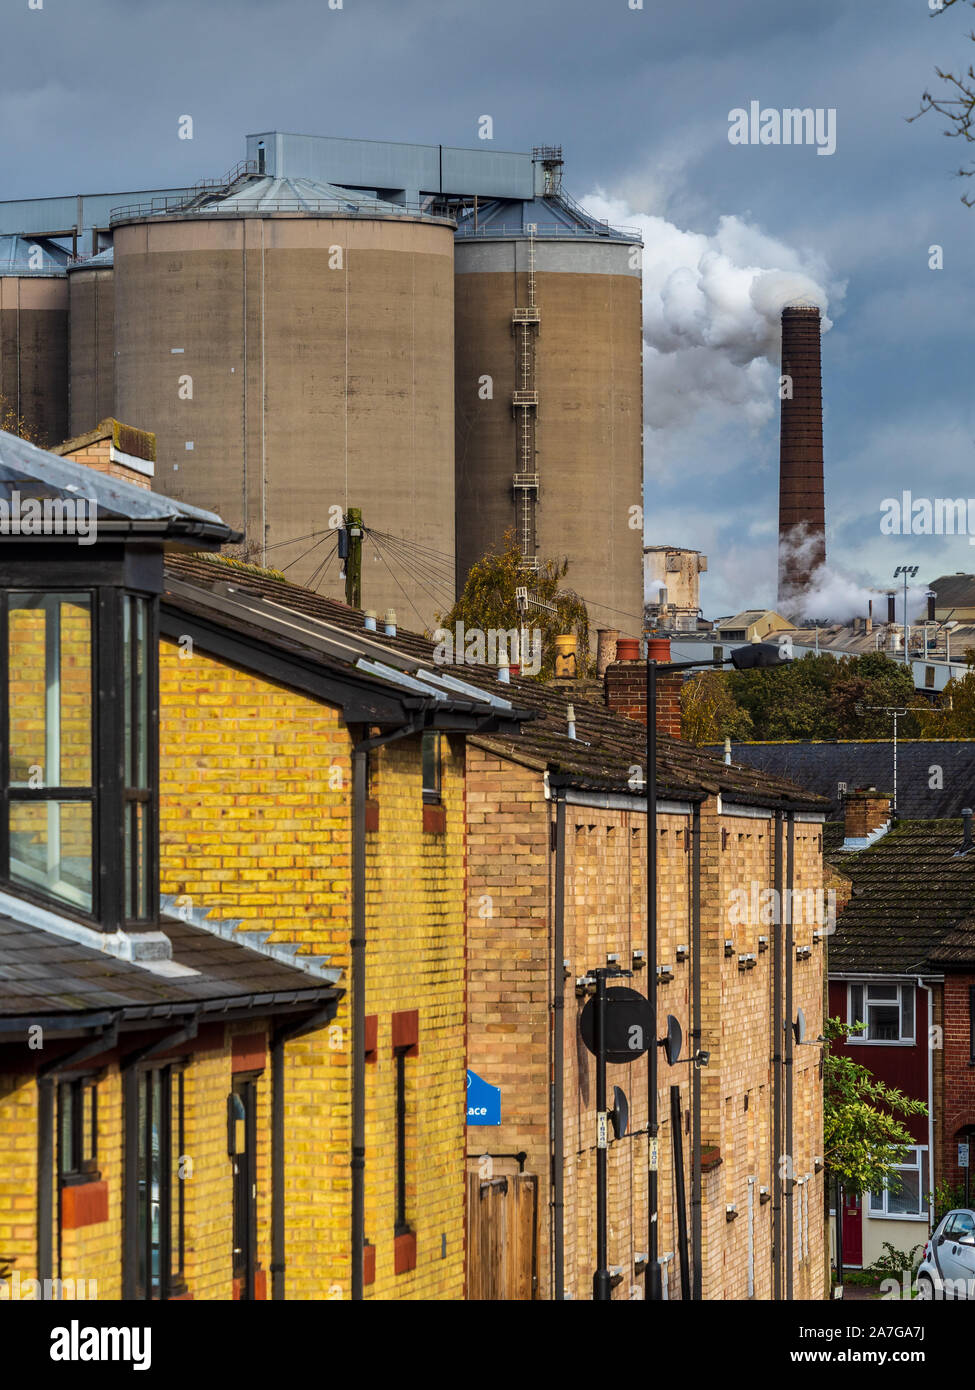 Fábrica del Reino Unido - Fábrica de Remolacha Azucarera Chimeneas - vapor sube desde la fábrica de British Sugar en Bury St Edmunds en Suffolk UK Foto de stock